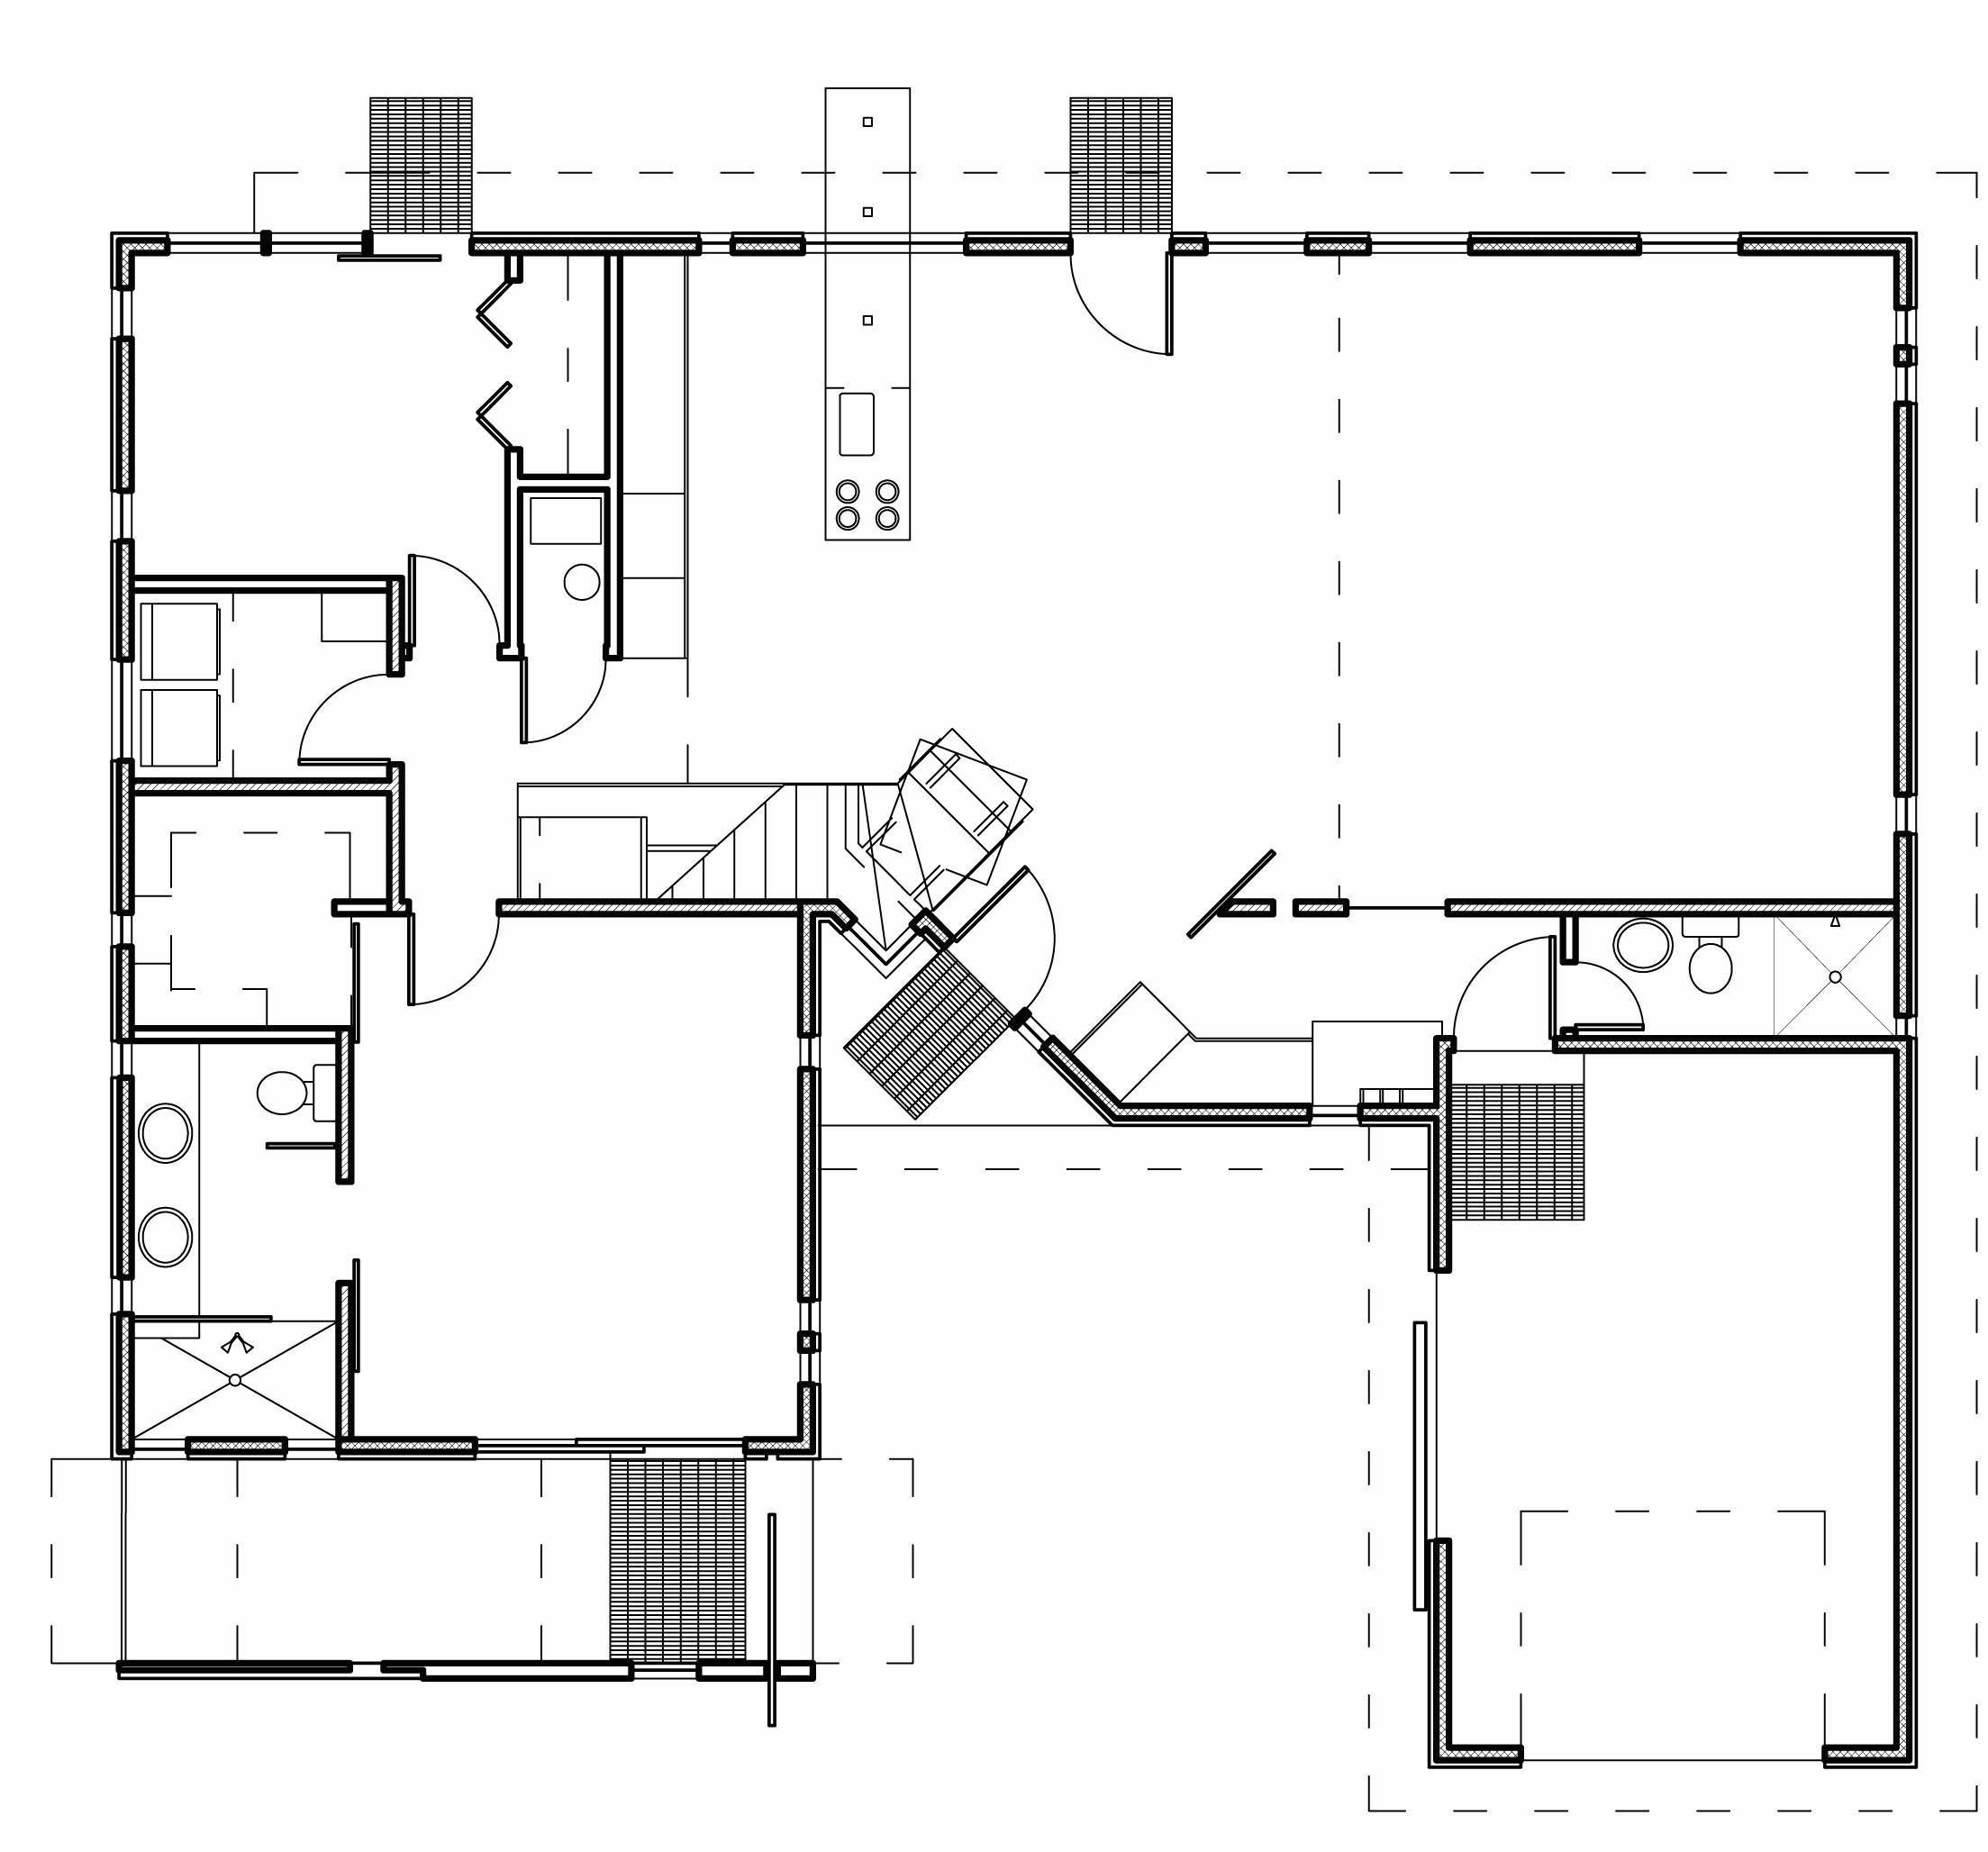 basic home plans unique house floor plan maker unique simple floor plan luxury home plans 0d